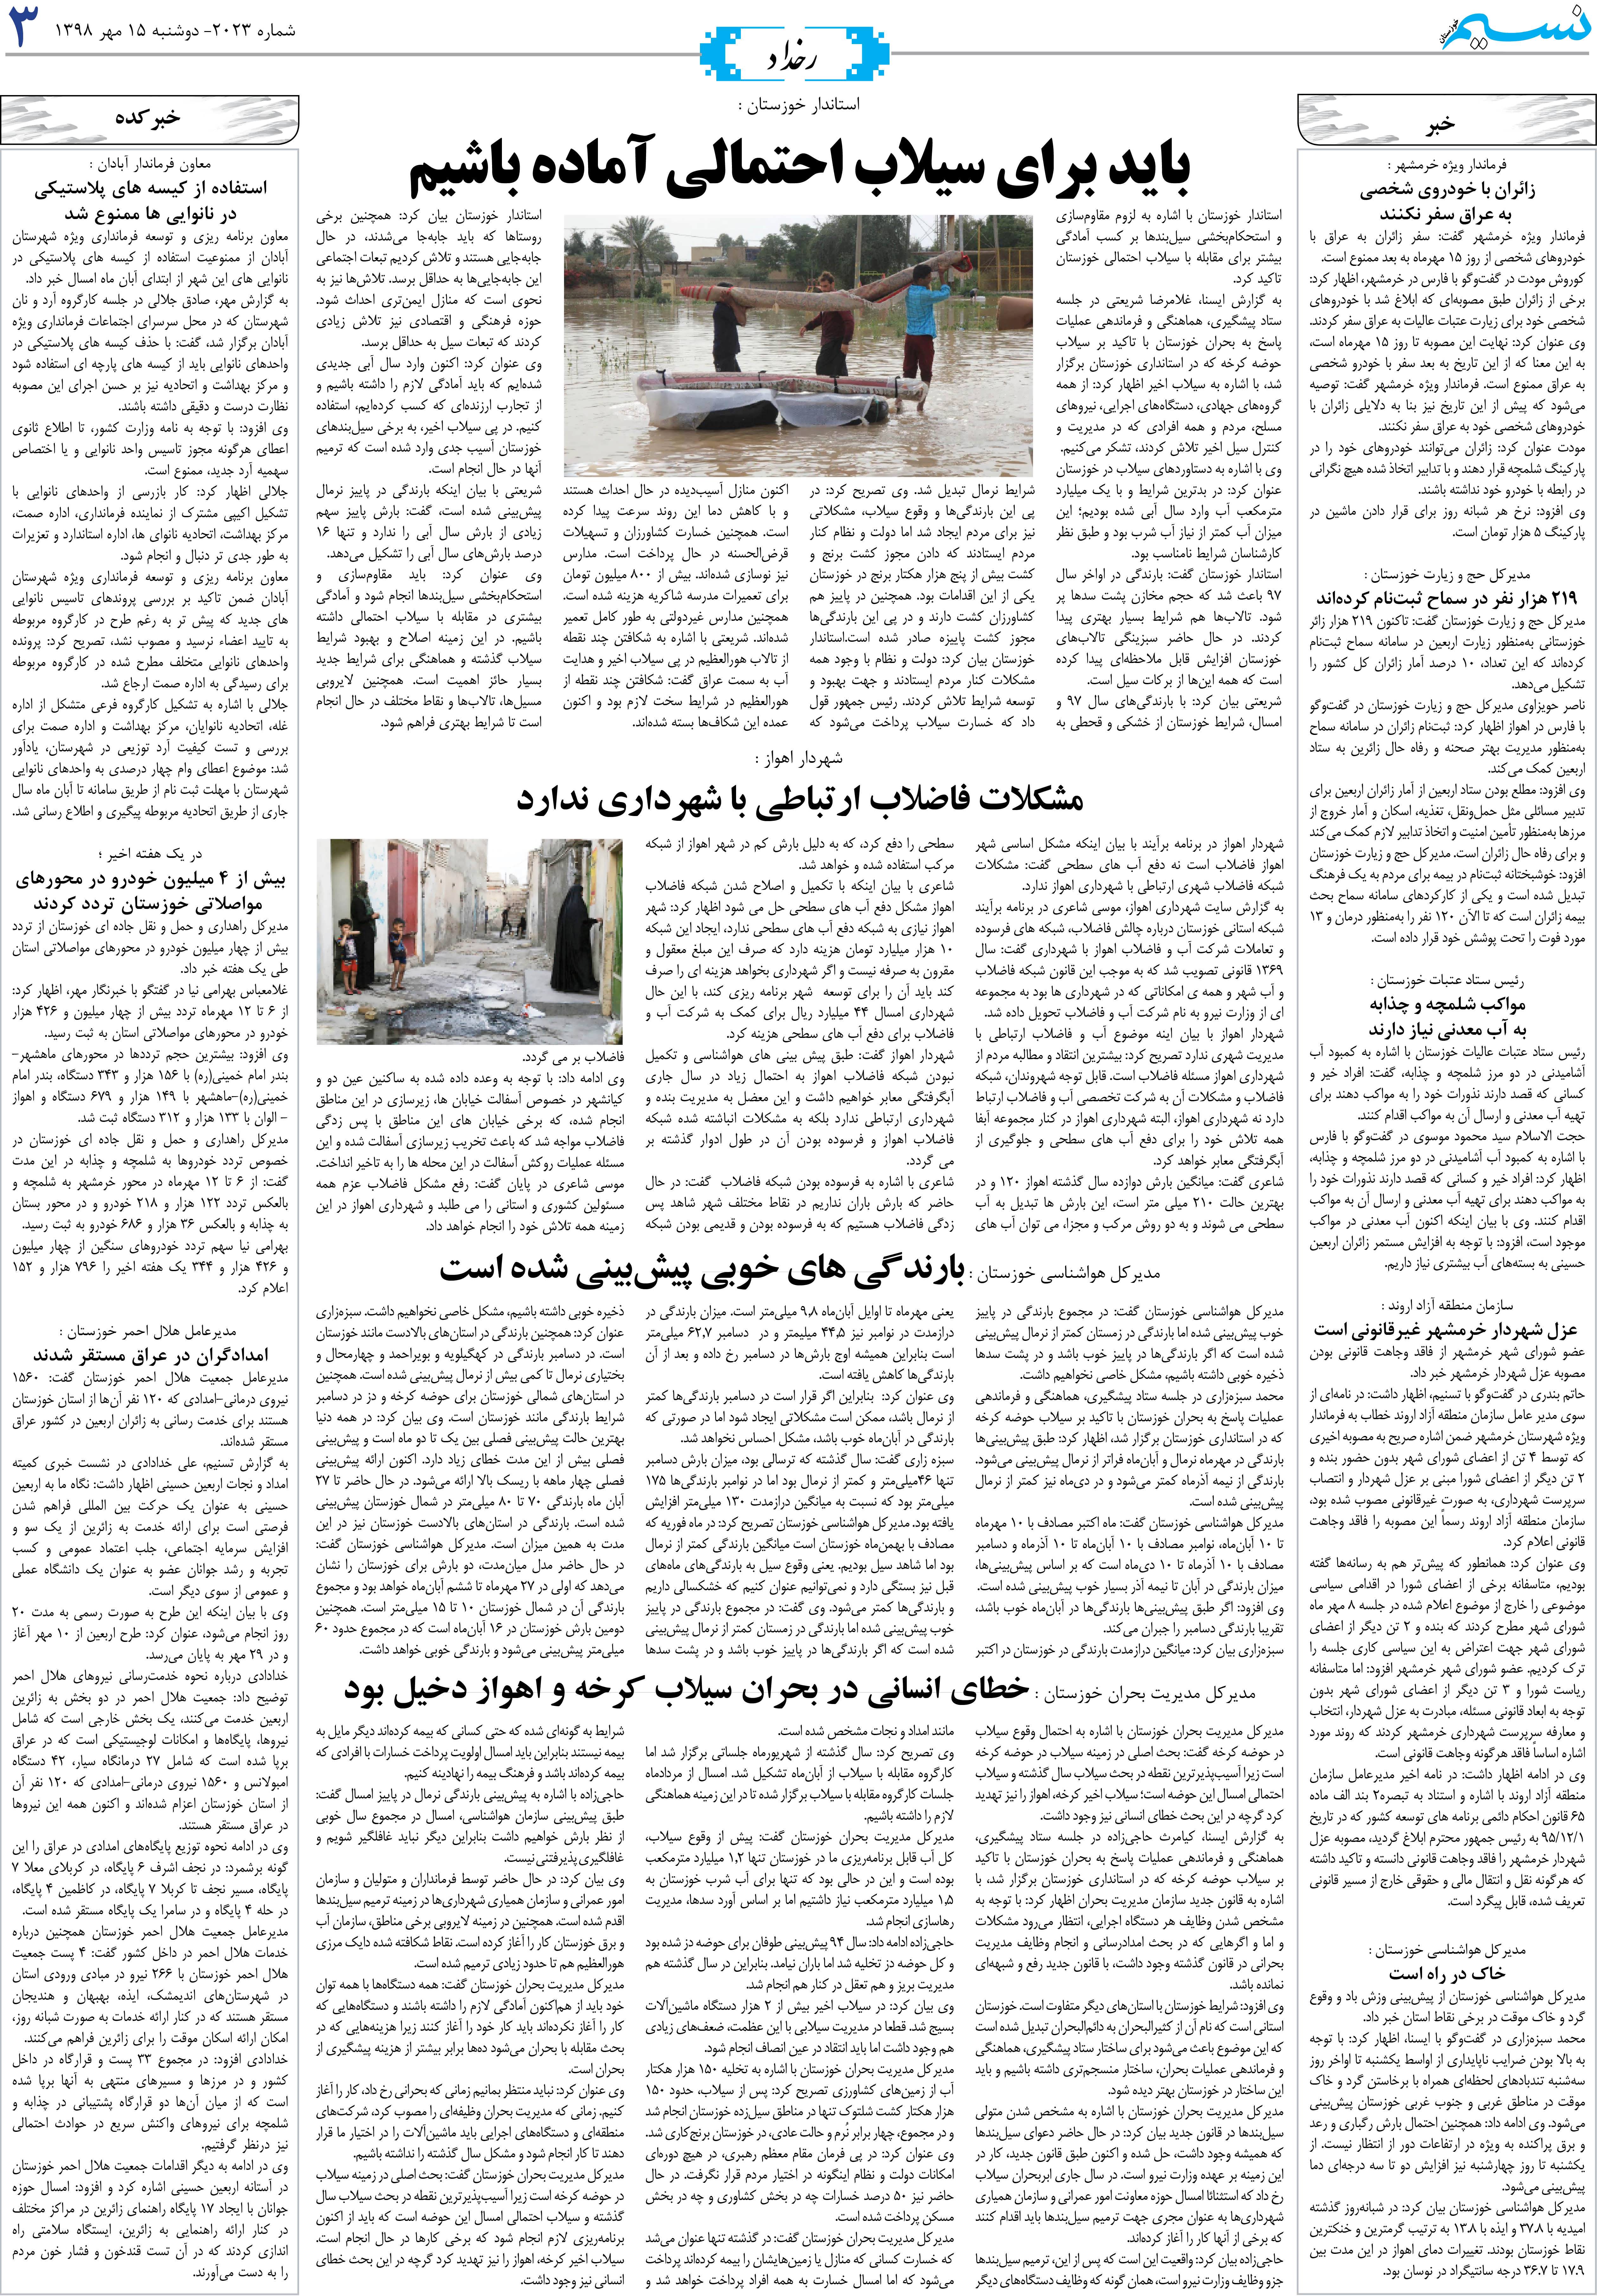 صفحه رخداد روزنامه نسیم شماره 2023